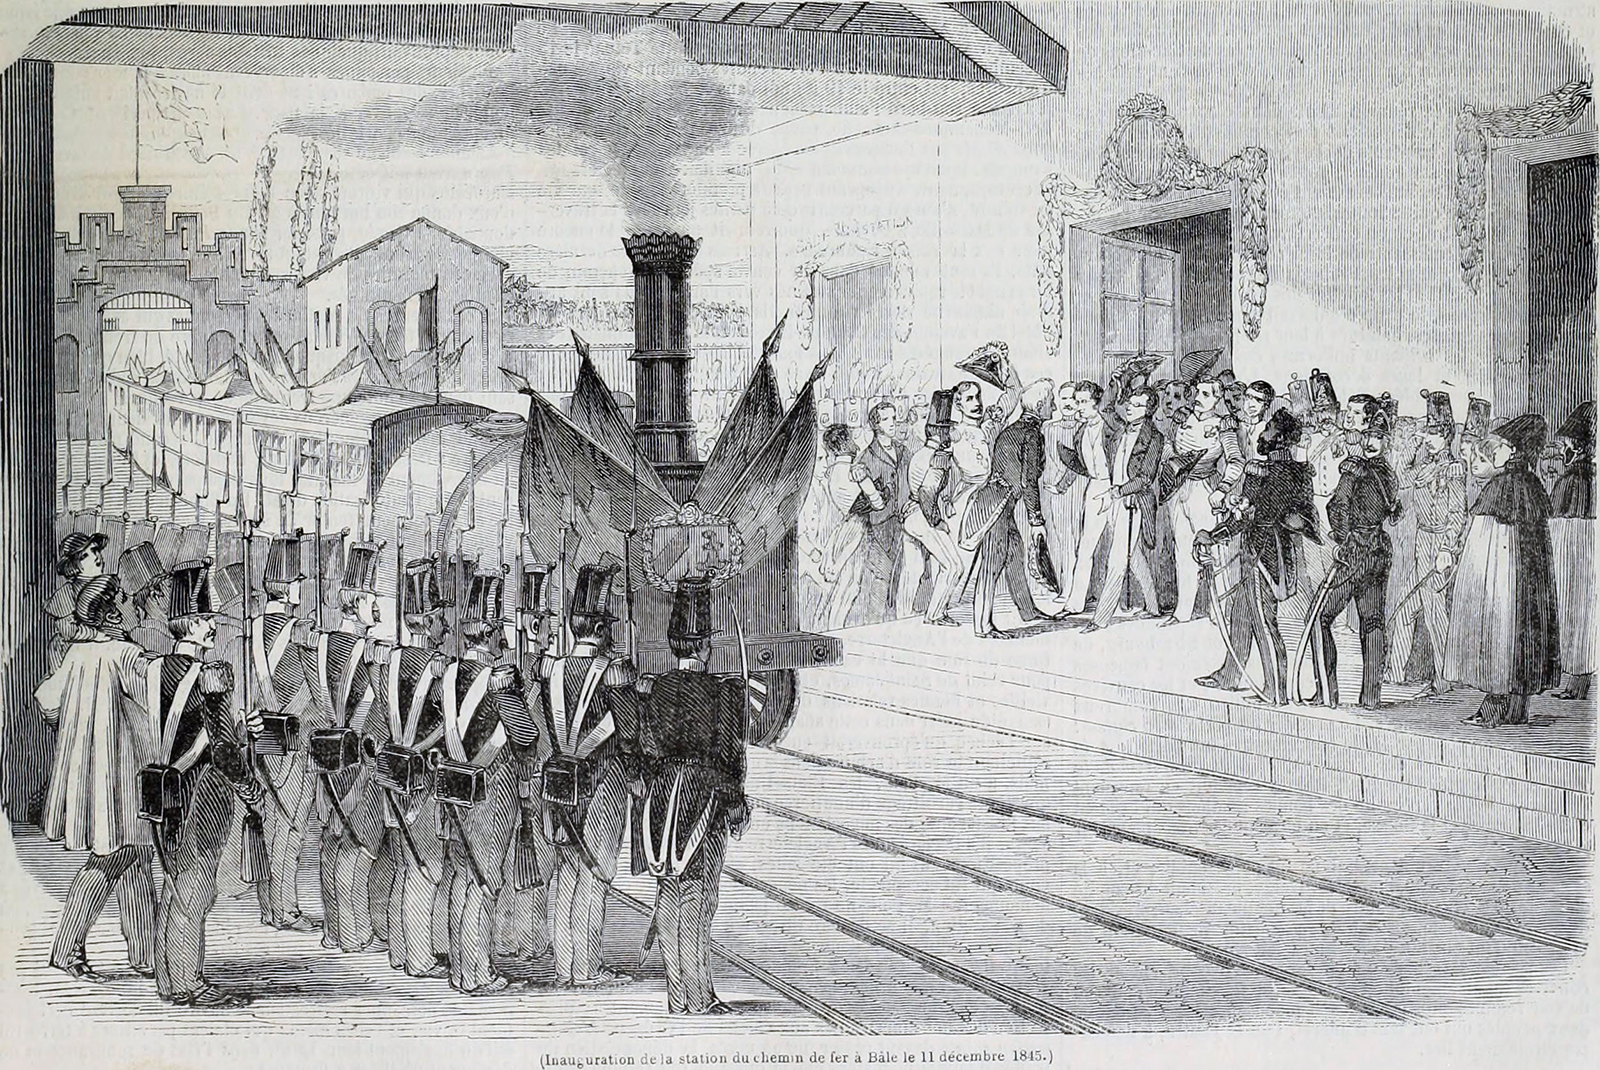 Zeichnung der Ankunft eines Zugs in einem Bahnhof